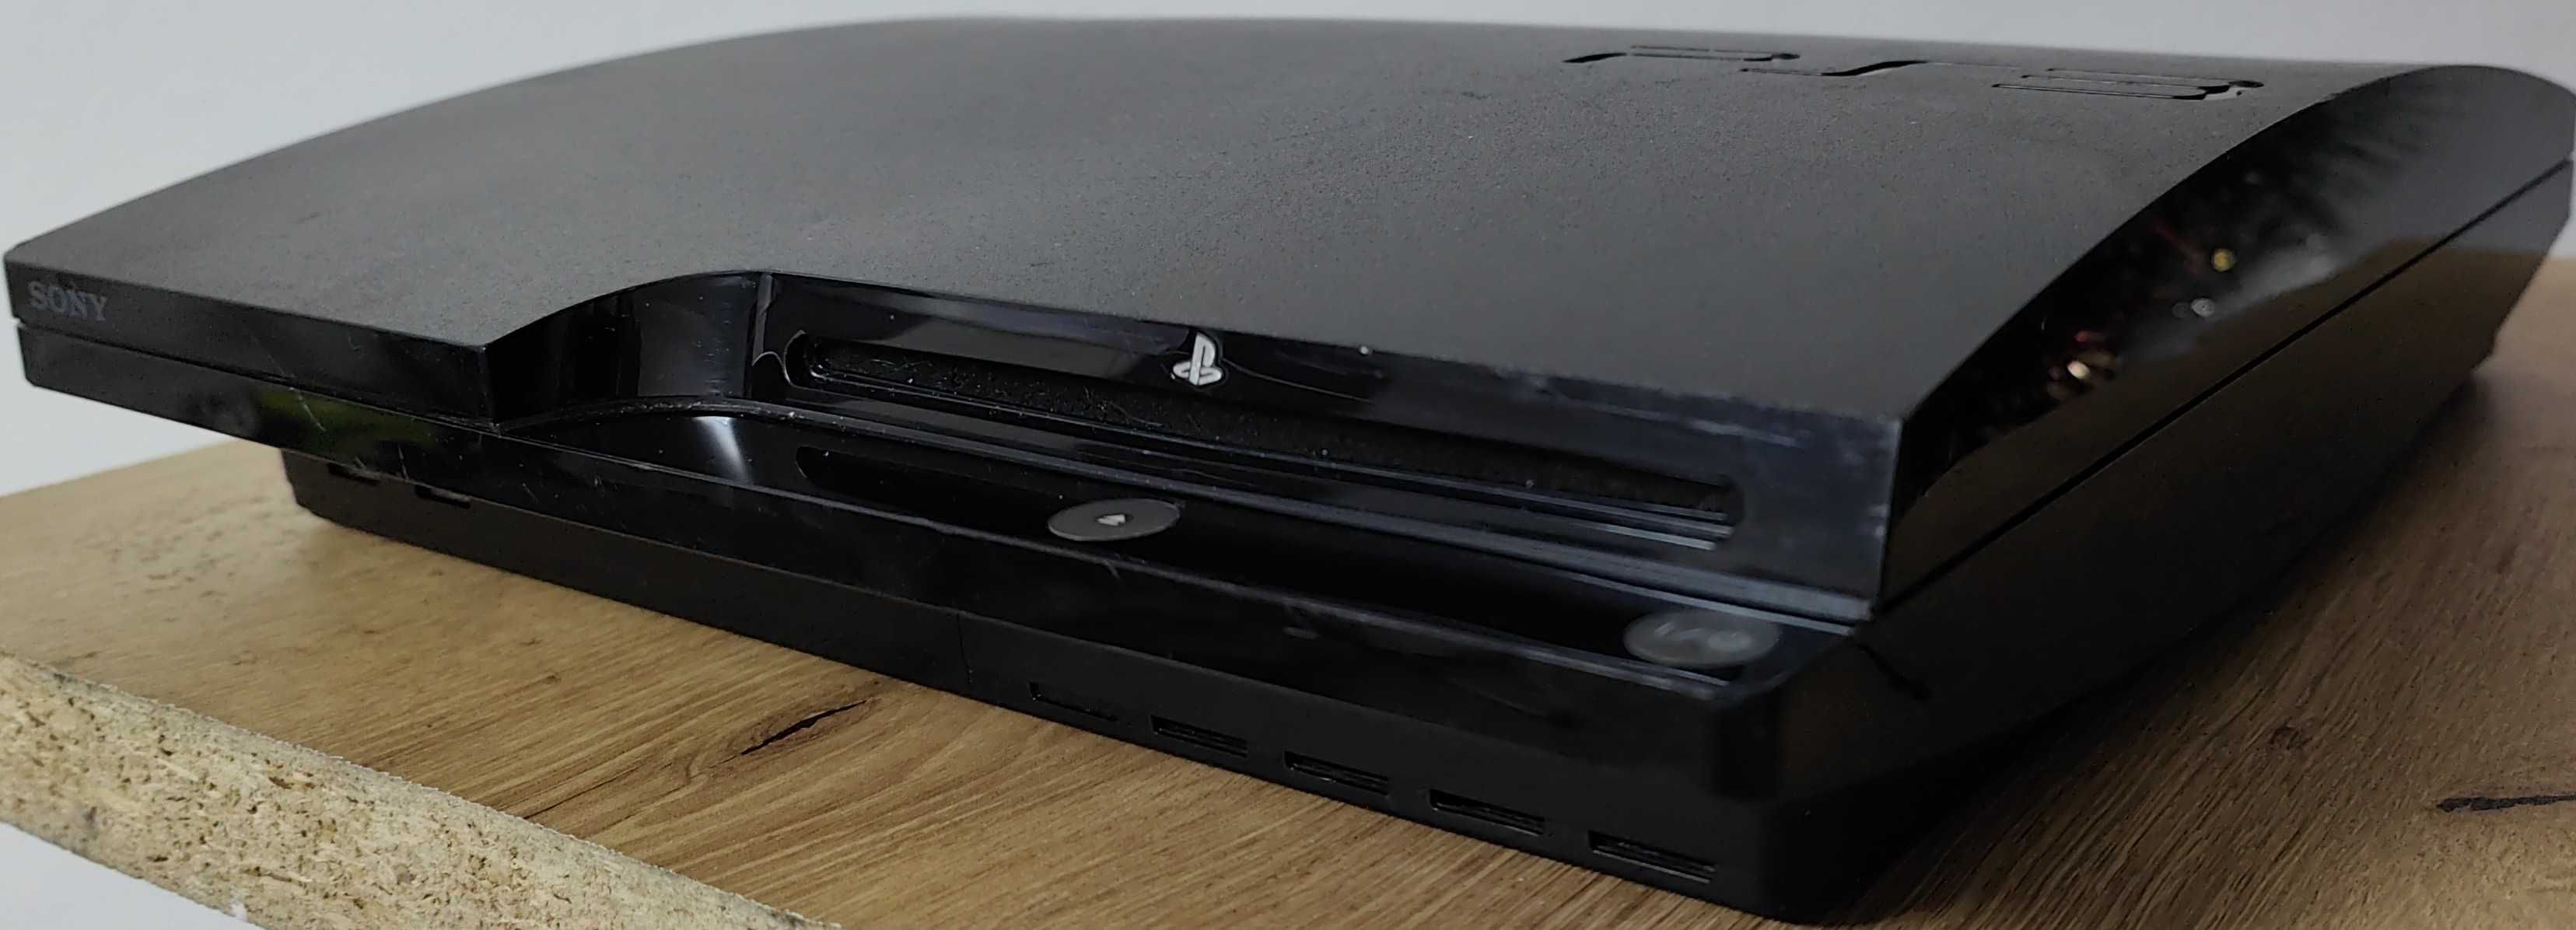 Consola PlayStation Slim 3 modata cu accesorii si 25 jocuri de top